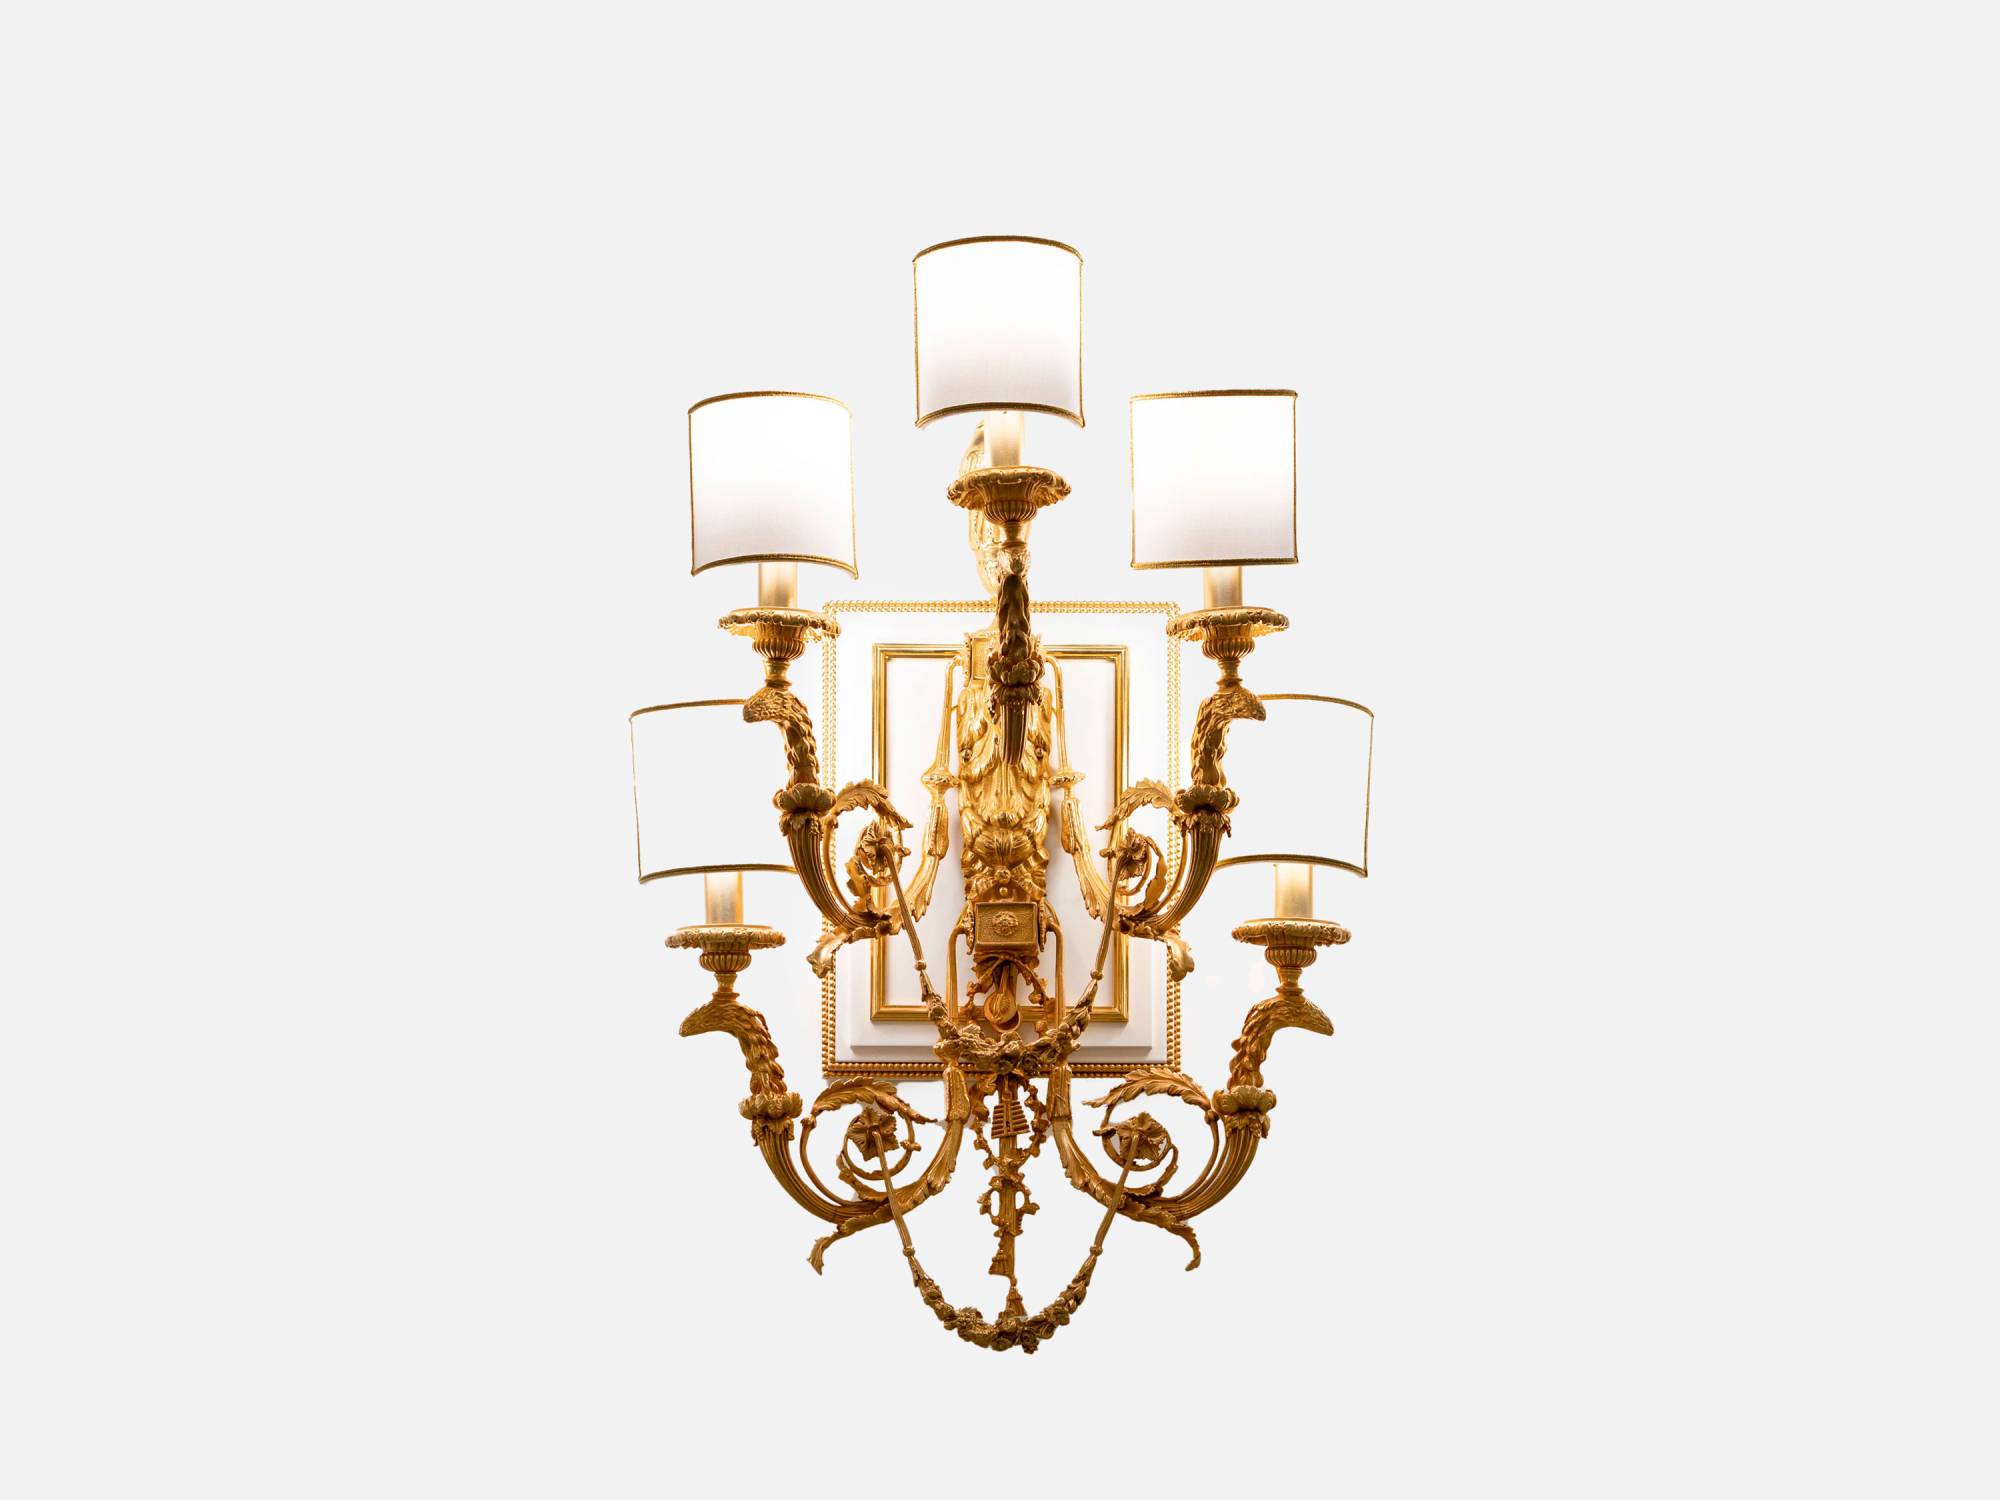 ART. 2306 – C.G. Capelletti Italian Luxury Classic Lighting. Made in Italy classic interior design